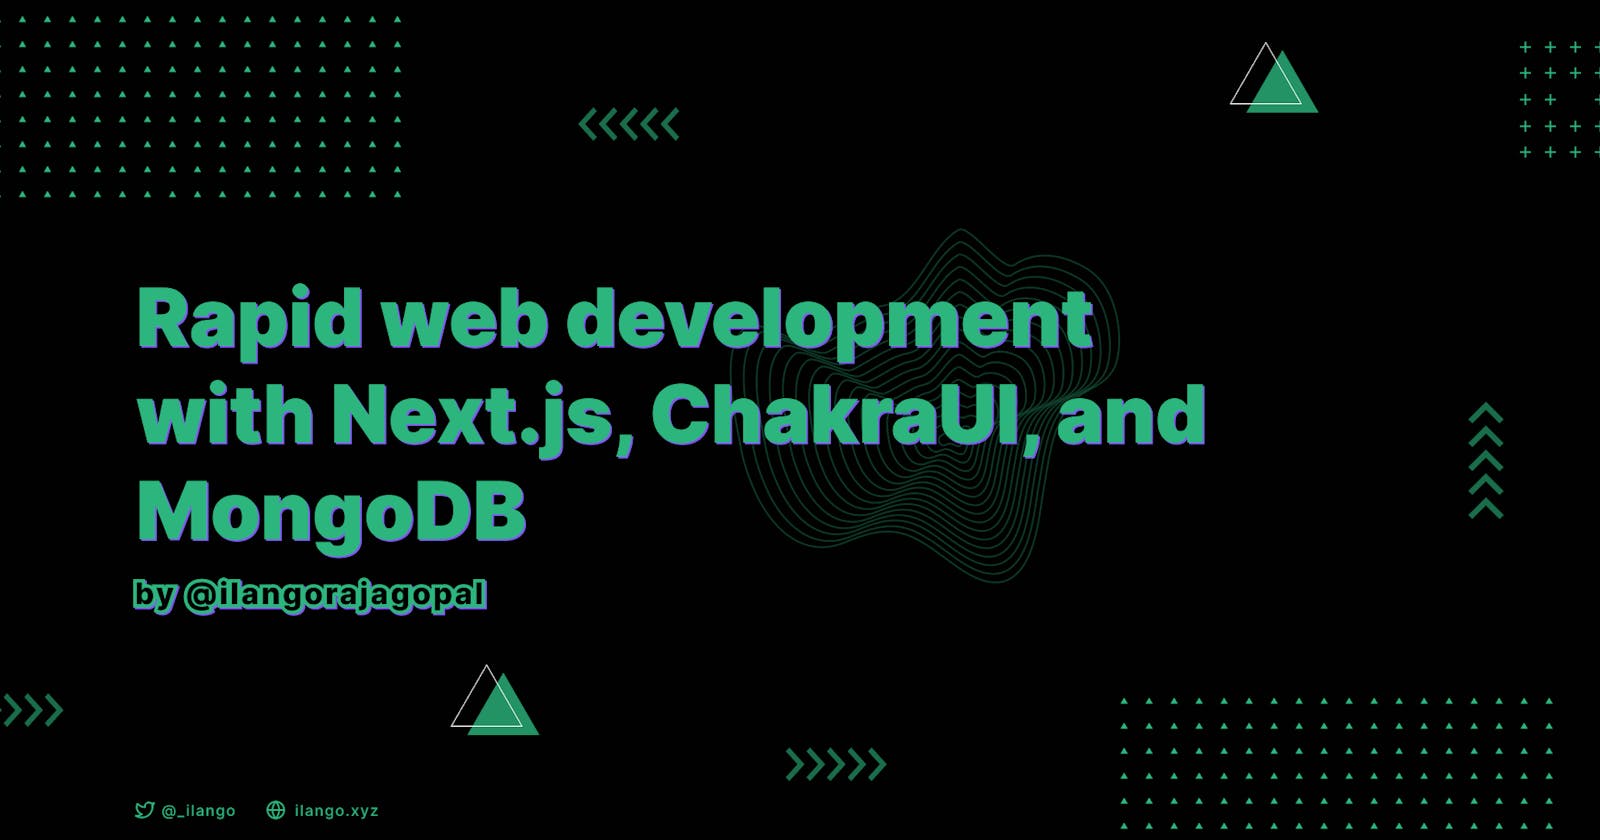 Rapid web development with Next.js, ChakraUI, and MongoDB